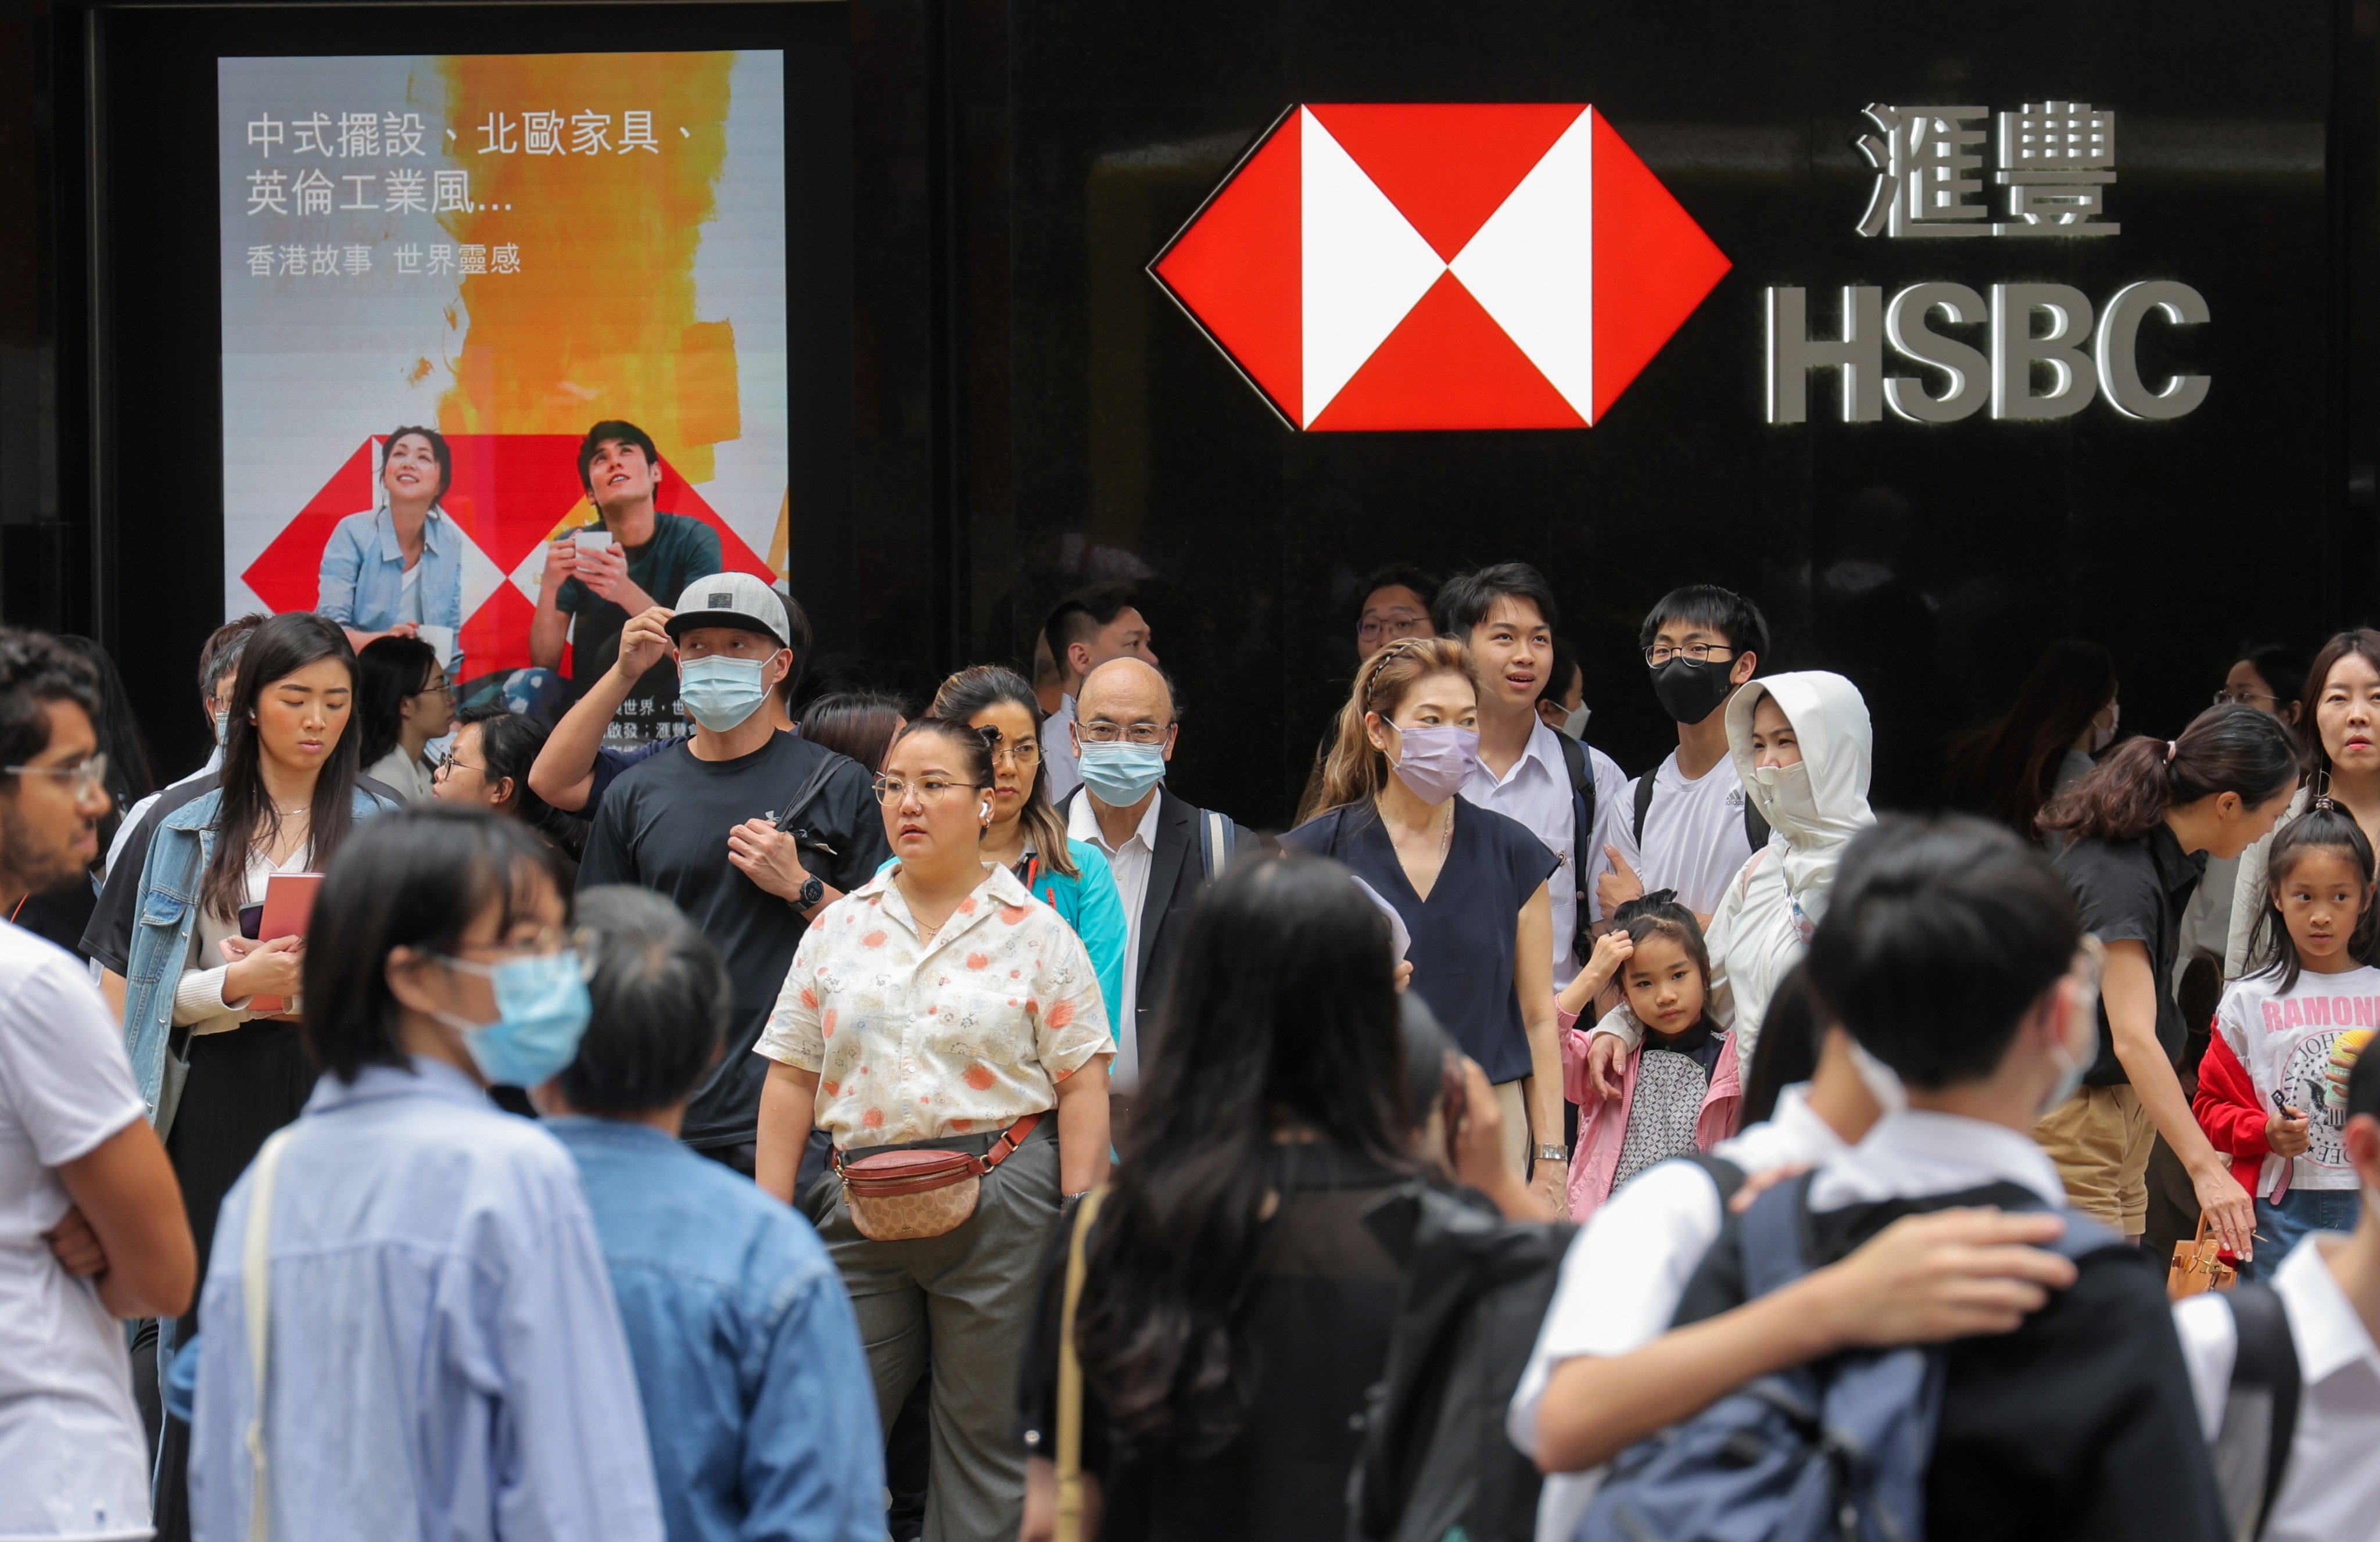 Pedestrians walk past an HSBC branch in Central, Hong Kong. Photo: Jelly Tse